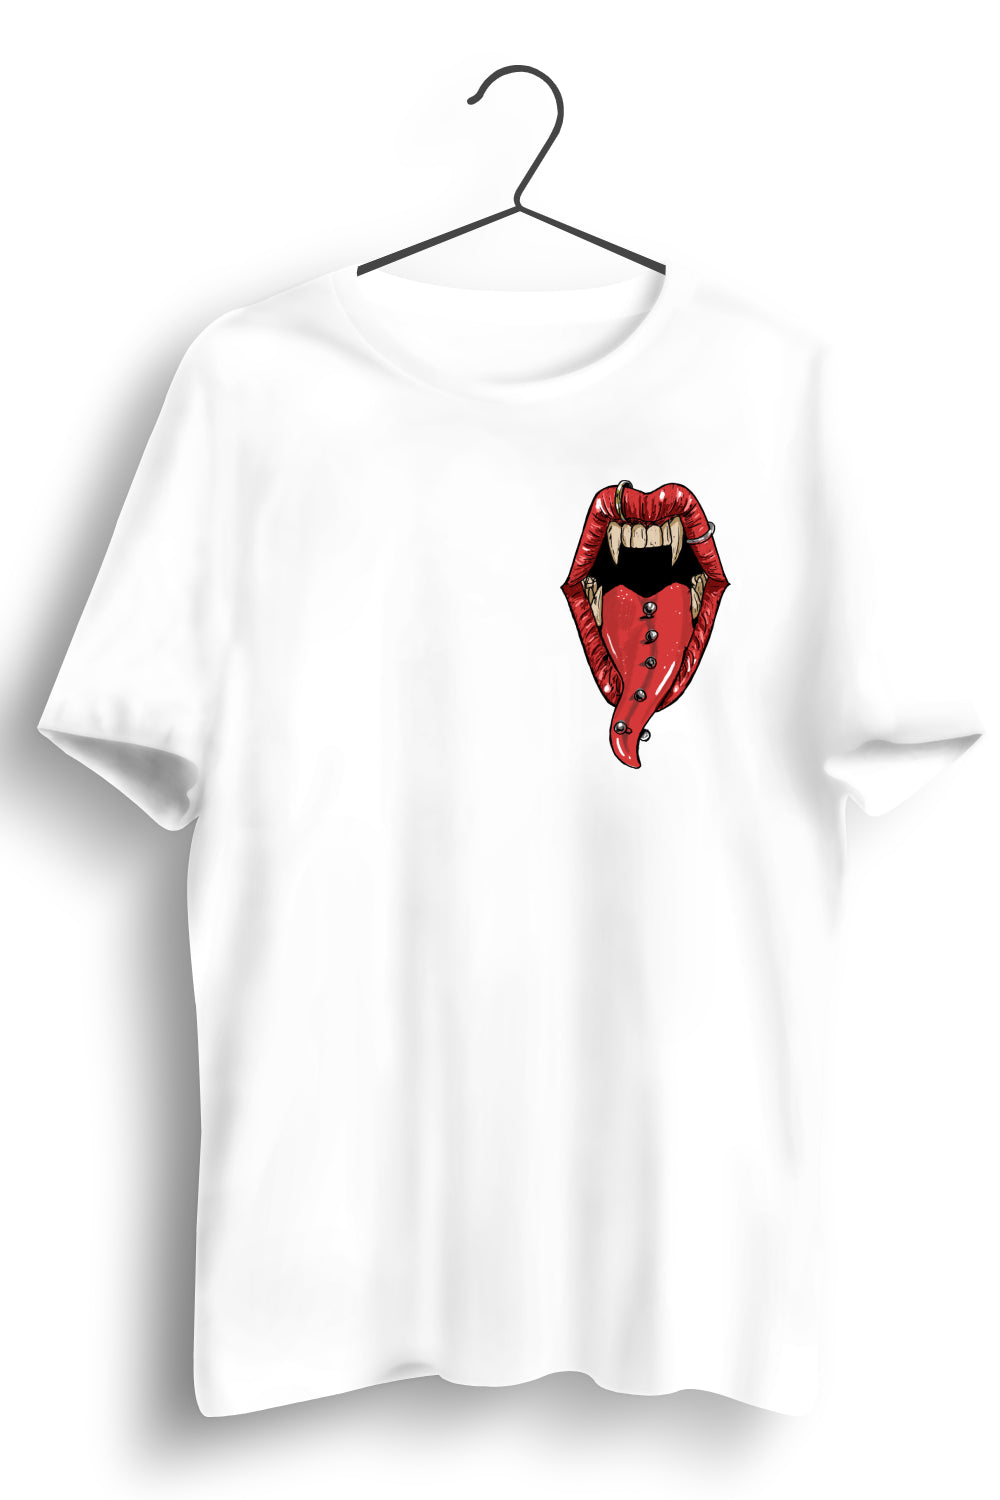 Punk Dracula Graphic Printed White Tshirt